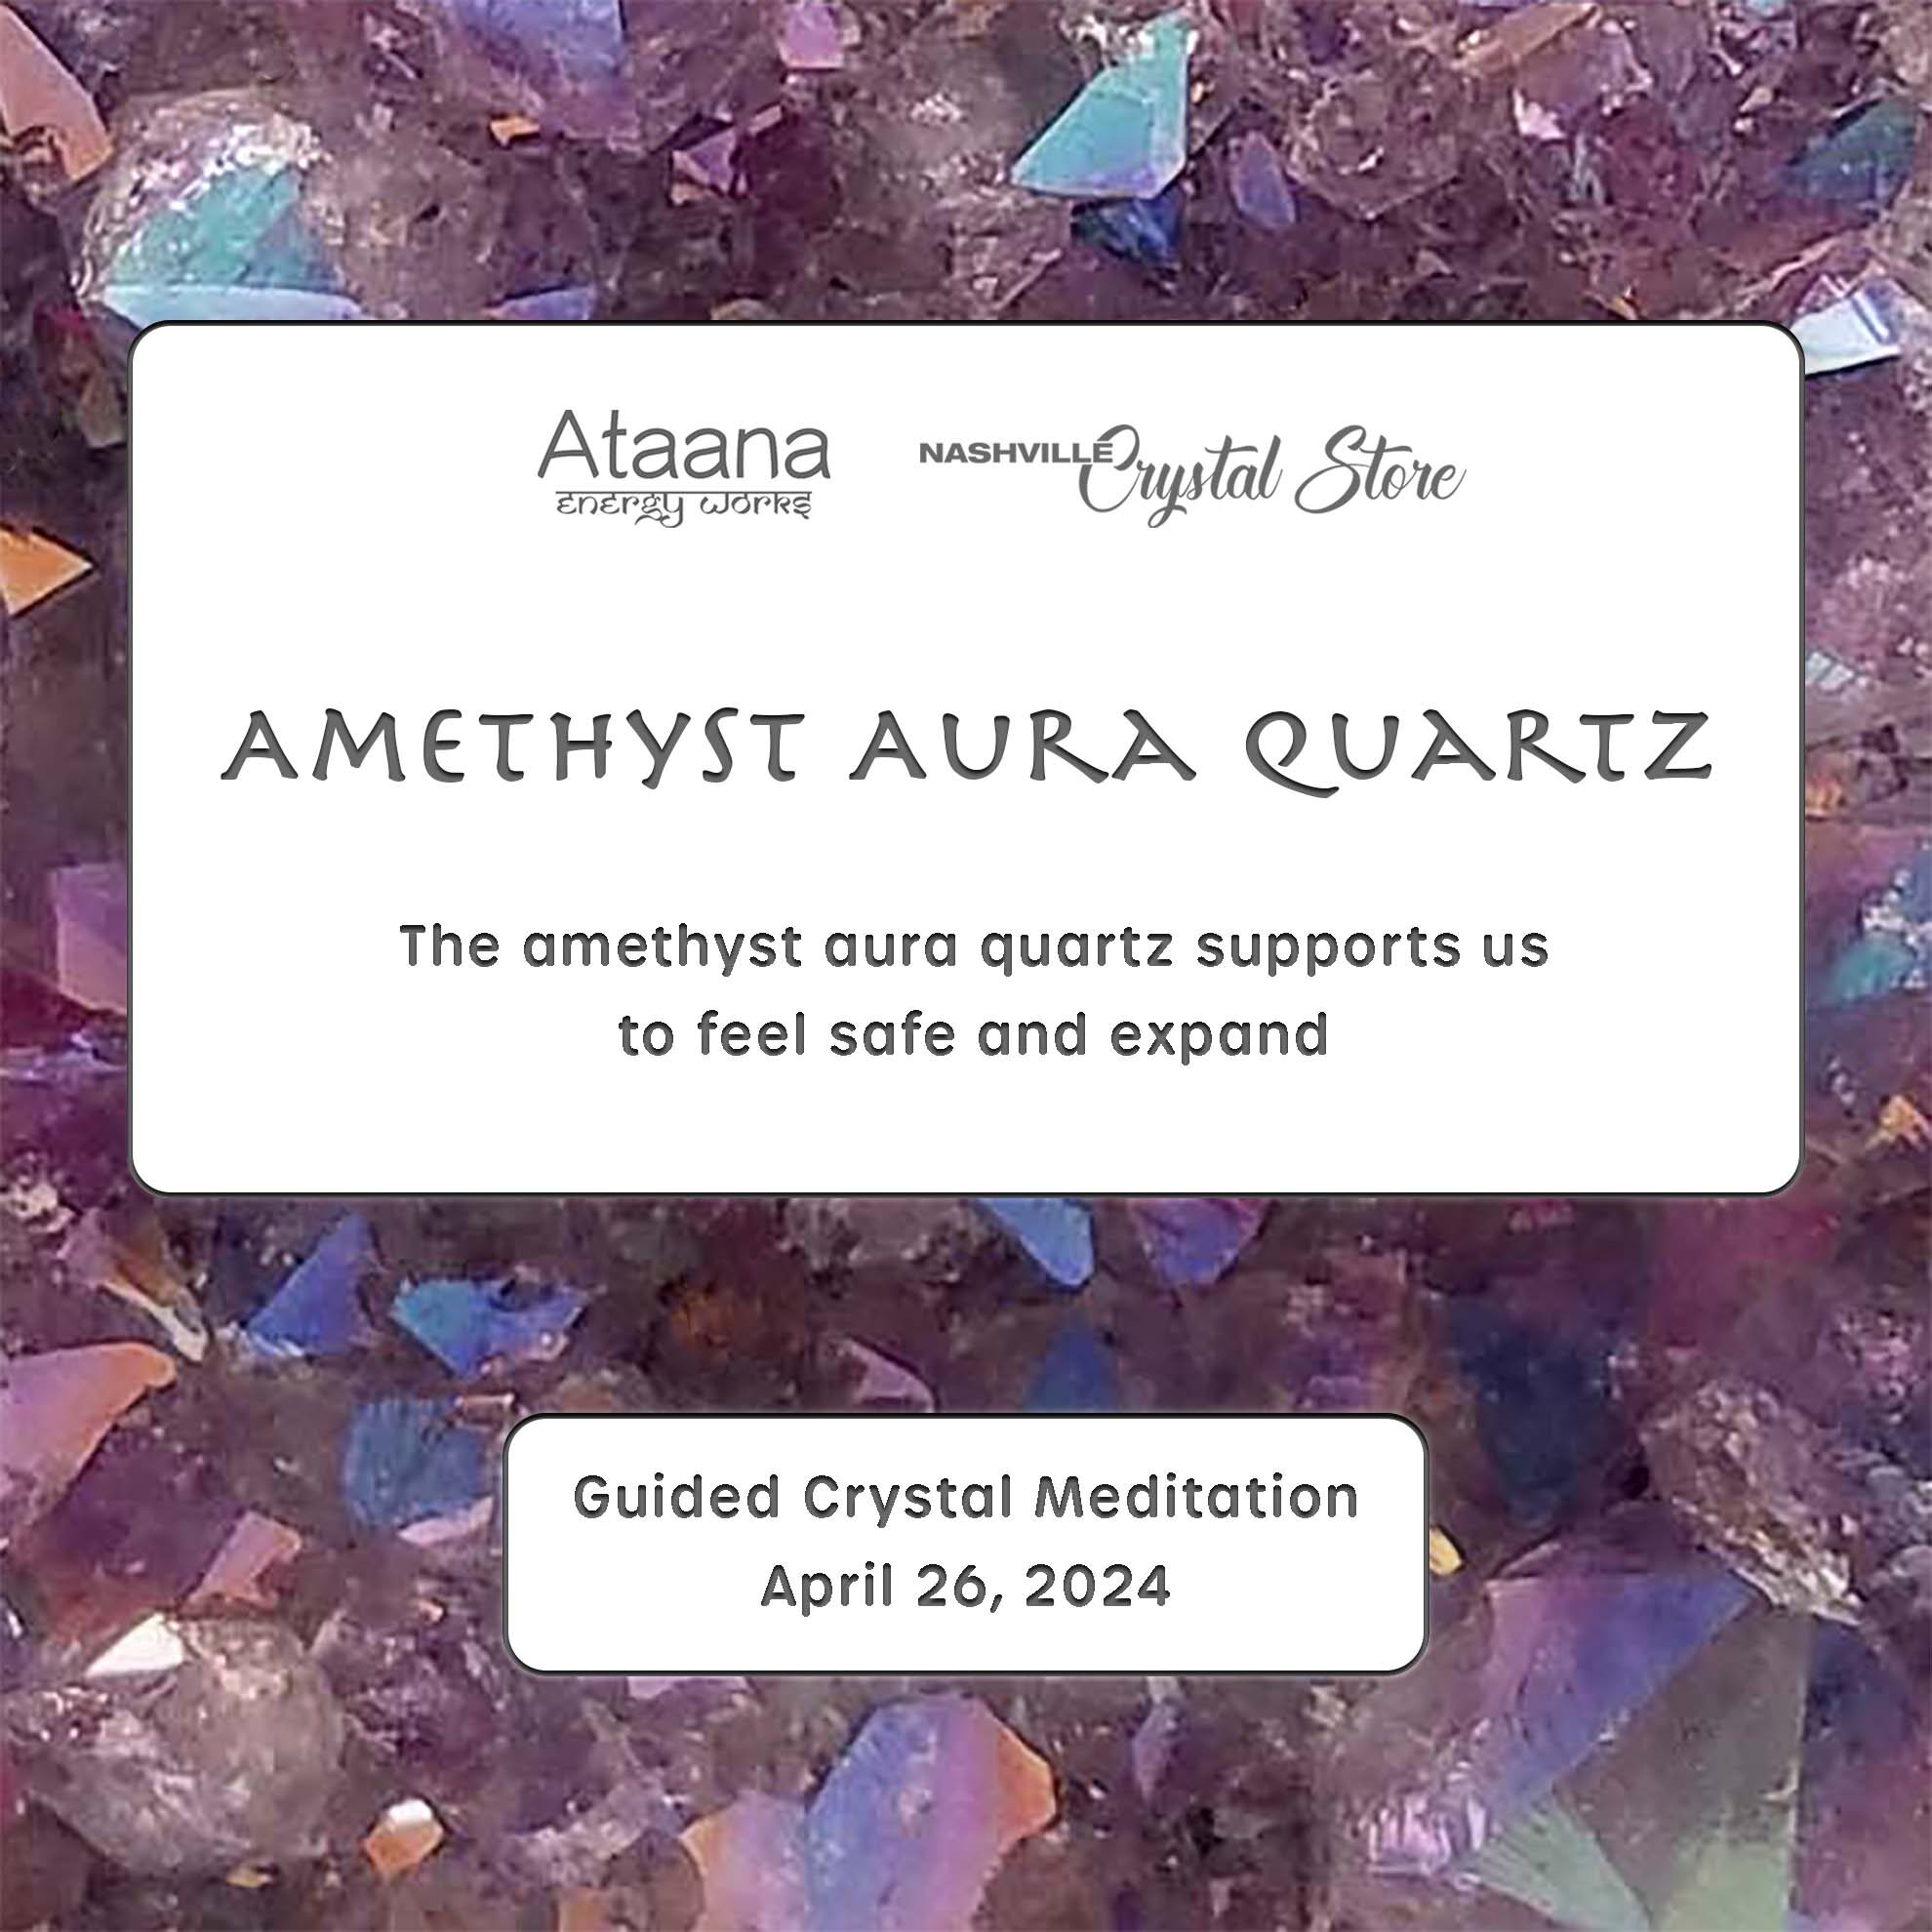 Ataana Method Nashville Crystal Store Amethyst Aura Quartz Guided Meditation